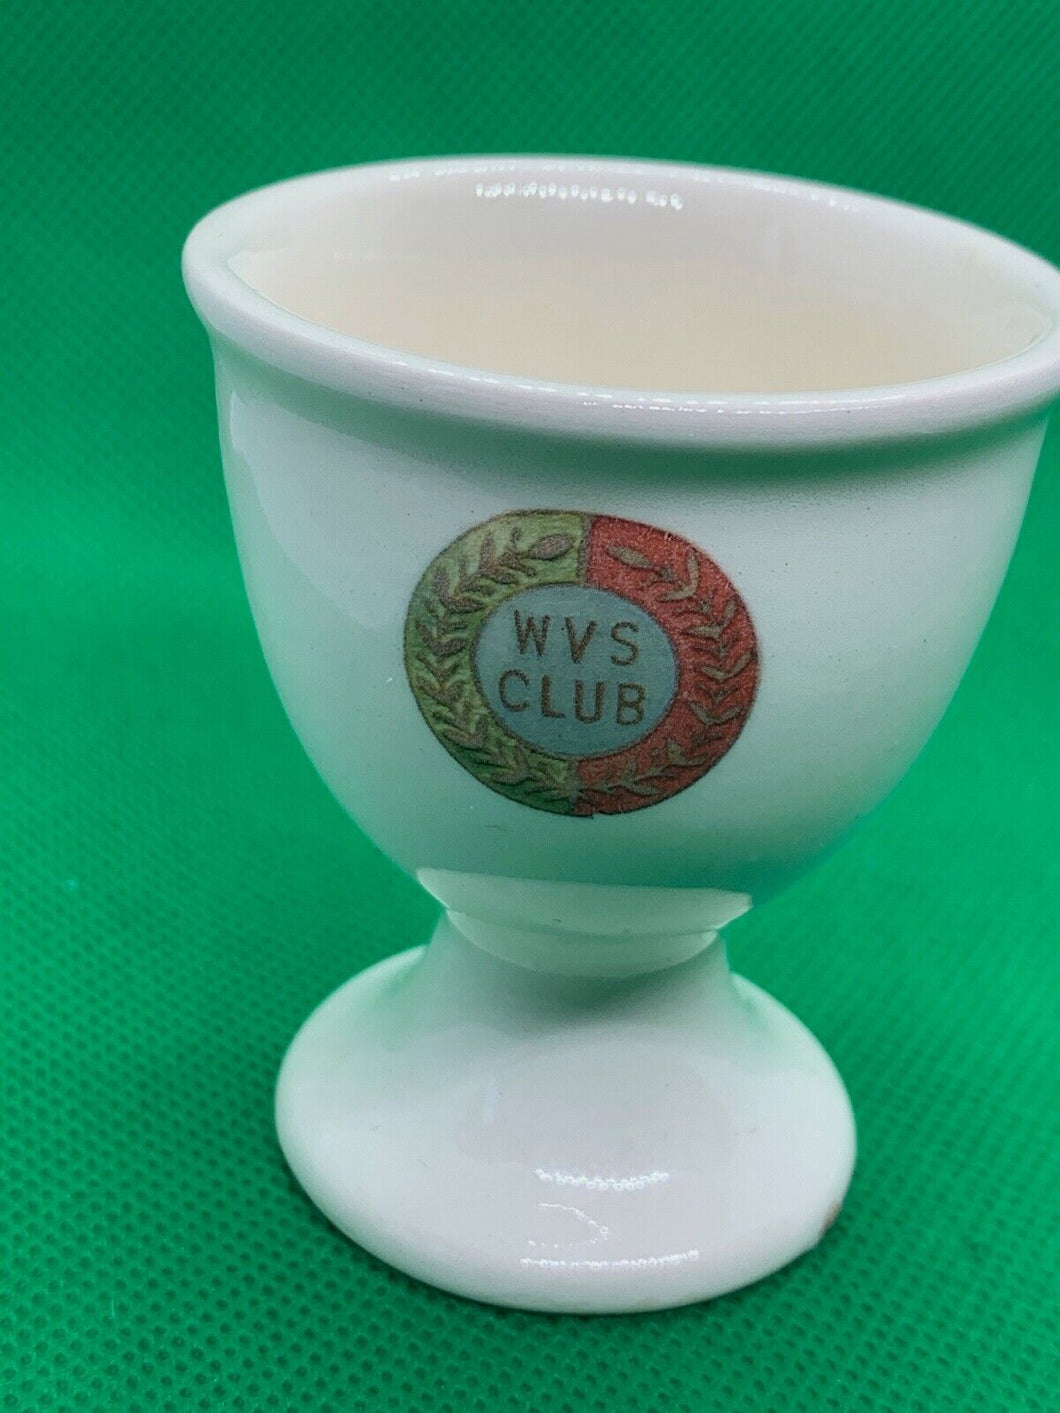 Badges of Empire Collectors Series Egg Cup - WVS Club - No 195